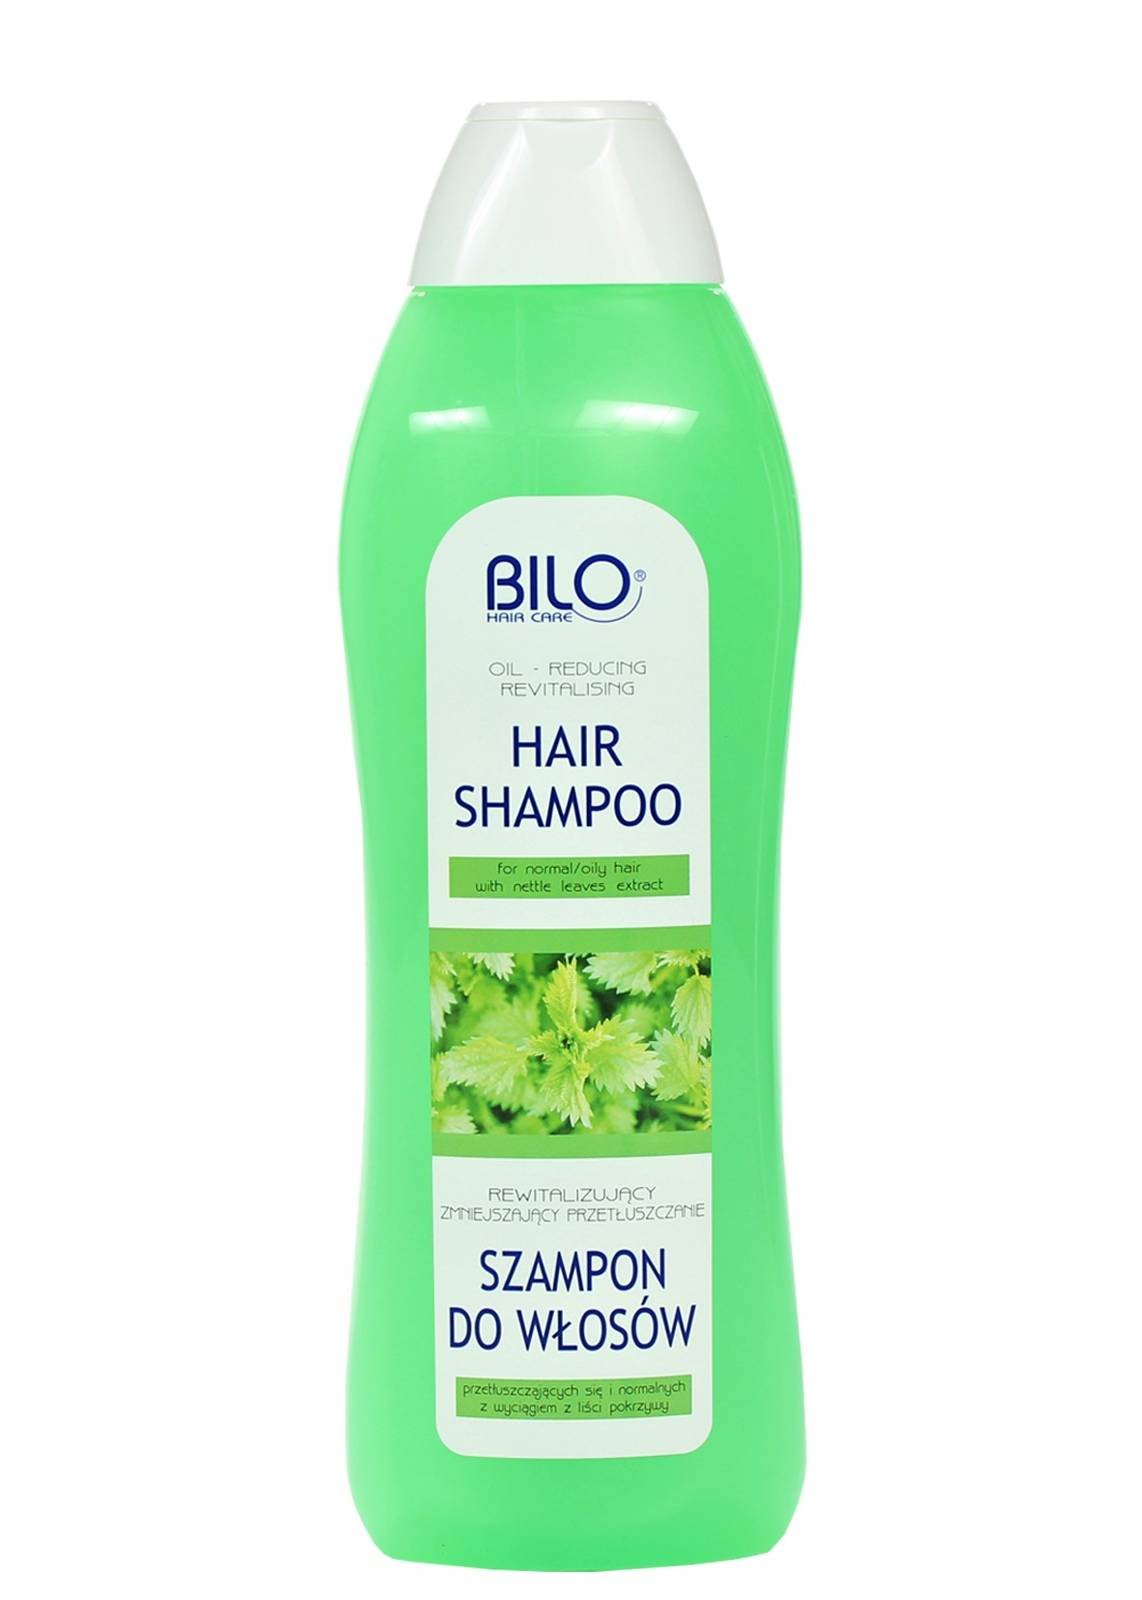 szampon z lisci pokrzywy